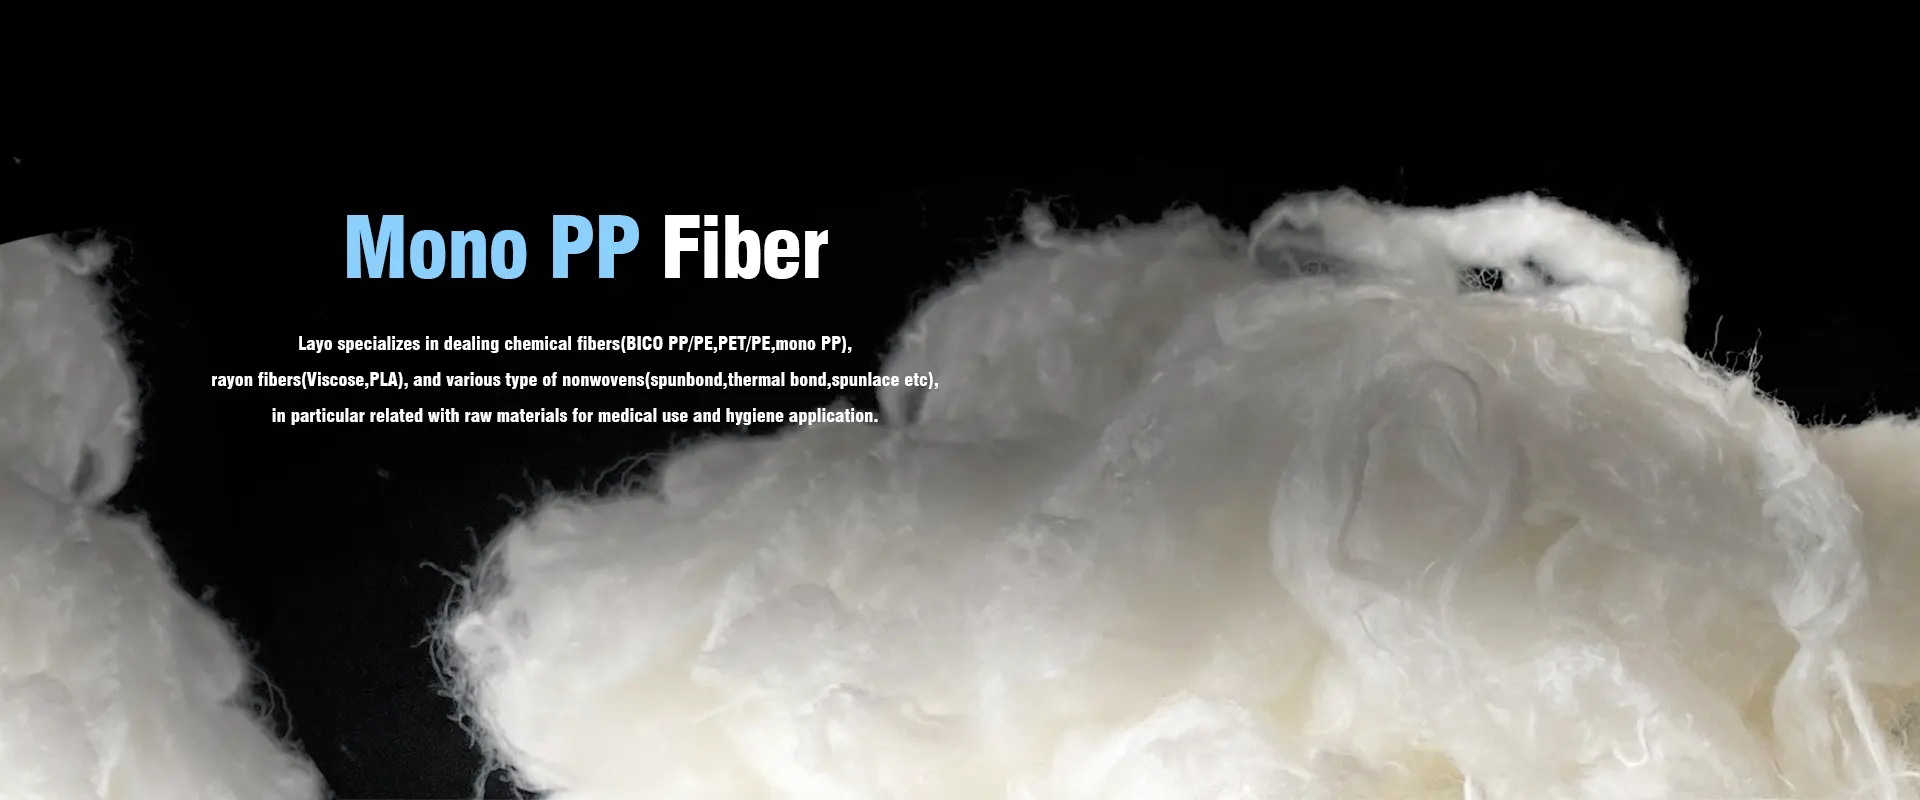 Mono PP Fiber leverandører og fremstiller